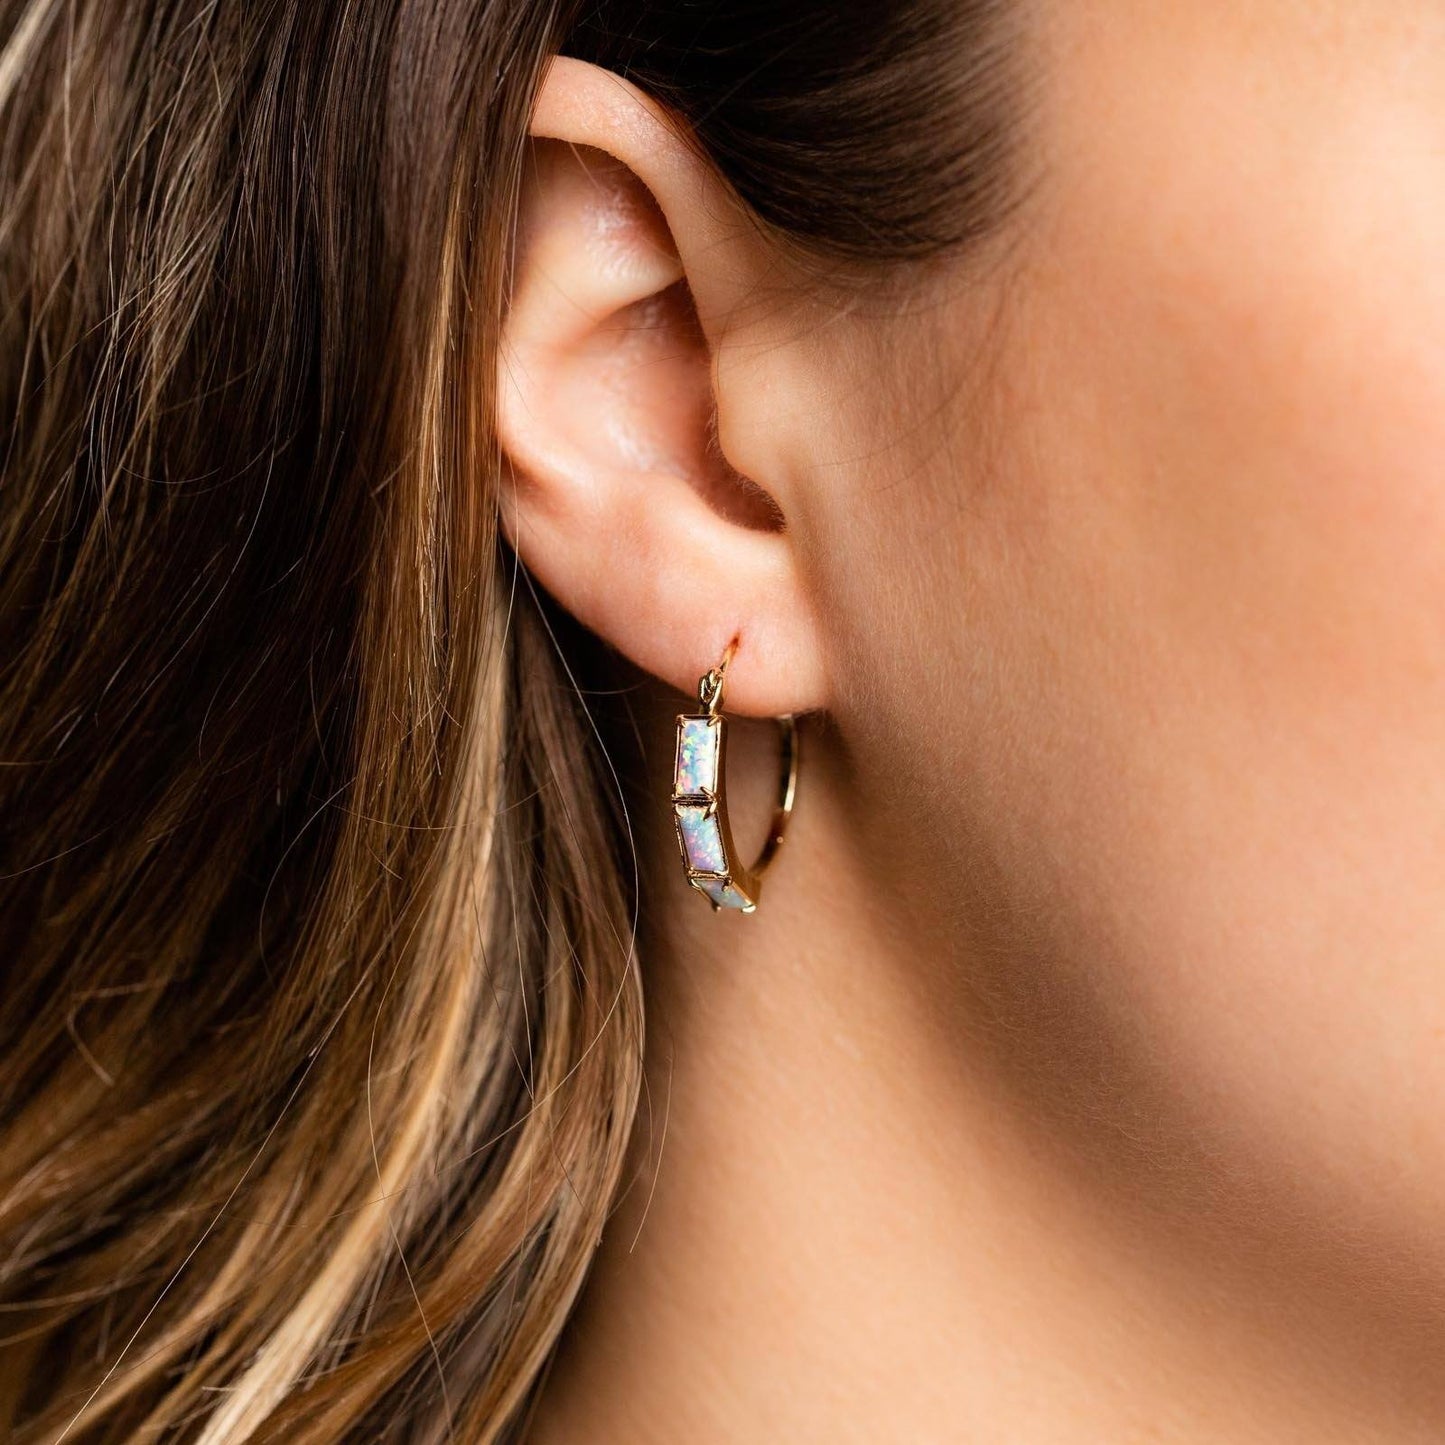 Milky Way Opal Hoops earrings Girls Crew 